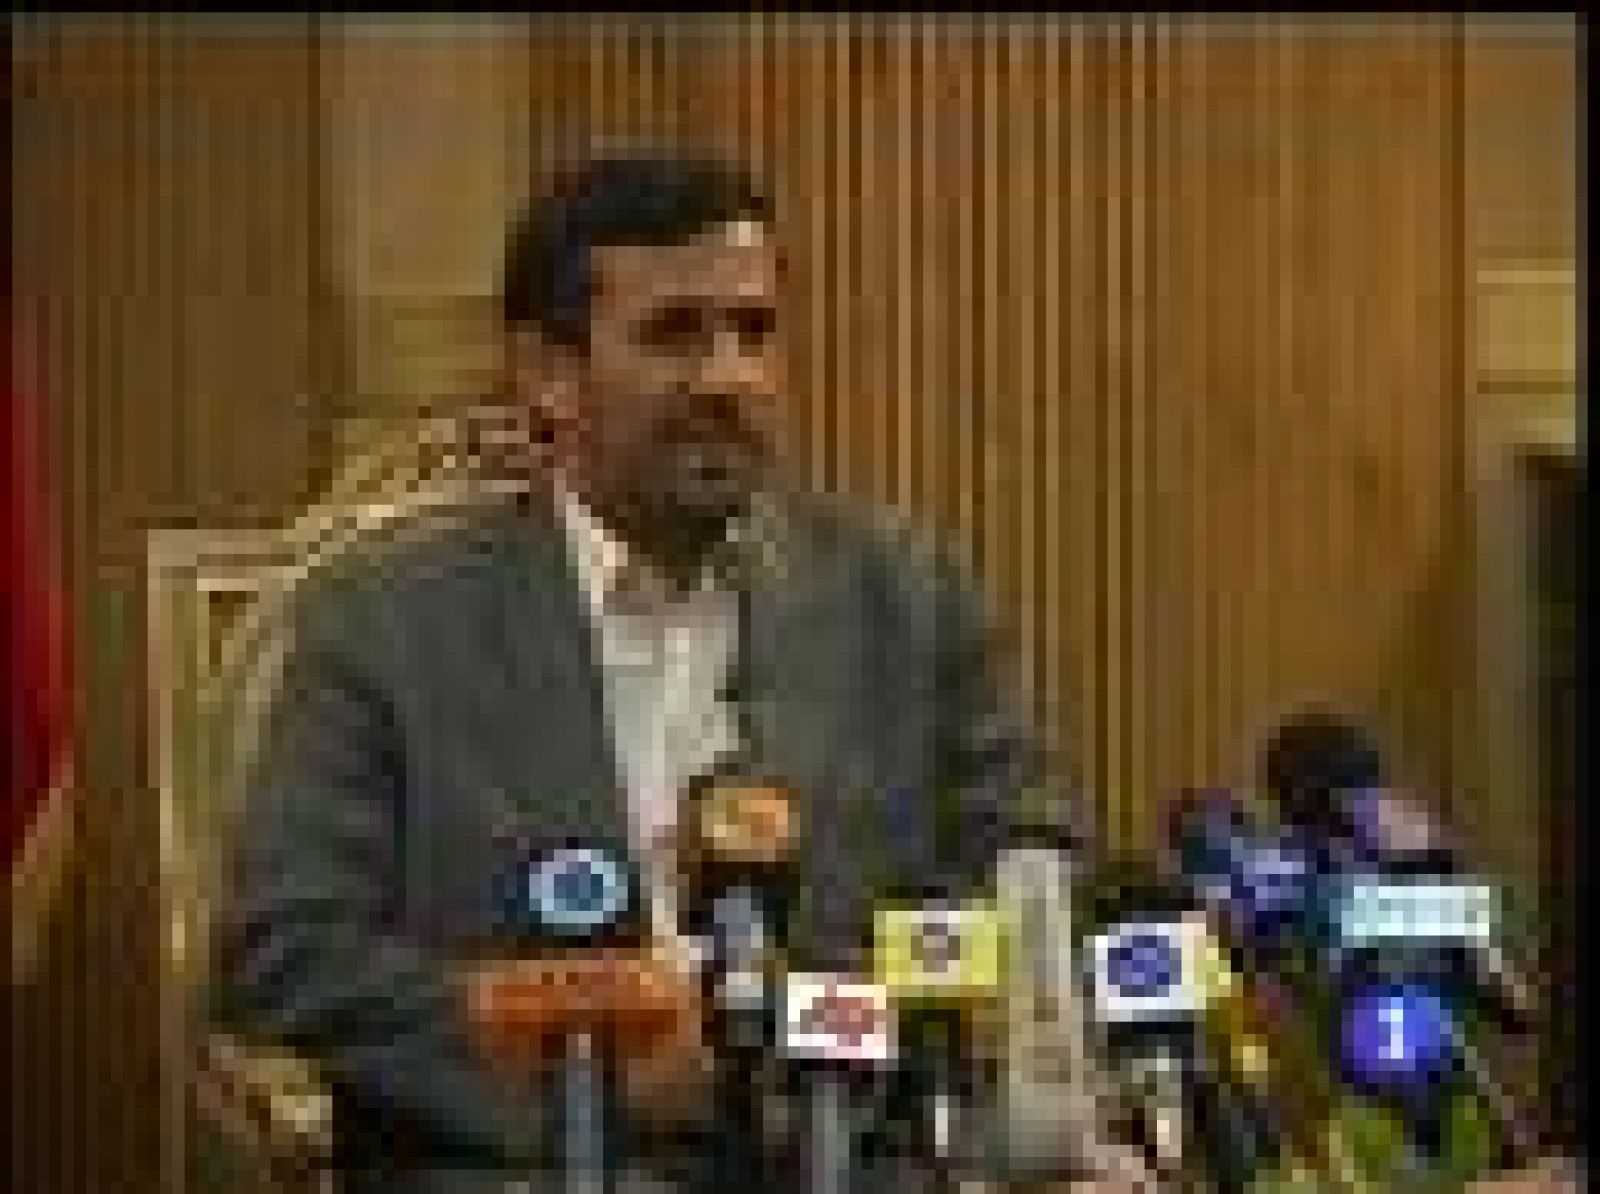 El presidente iraní, Mahmud Ahmadinejad, acapara la atención de la cumbre contra el racismo antes incluso de su inauguración. Varias potencias occidentales han boicoteado la conferencia por temor a las declaraciones antisemitas.  